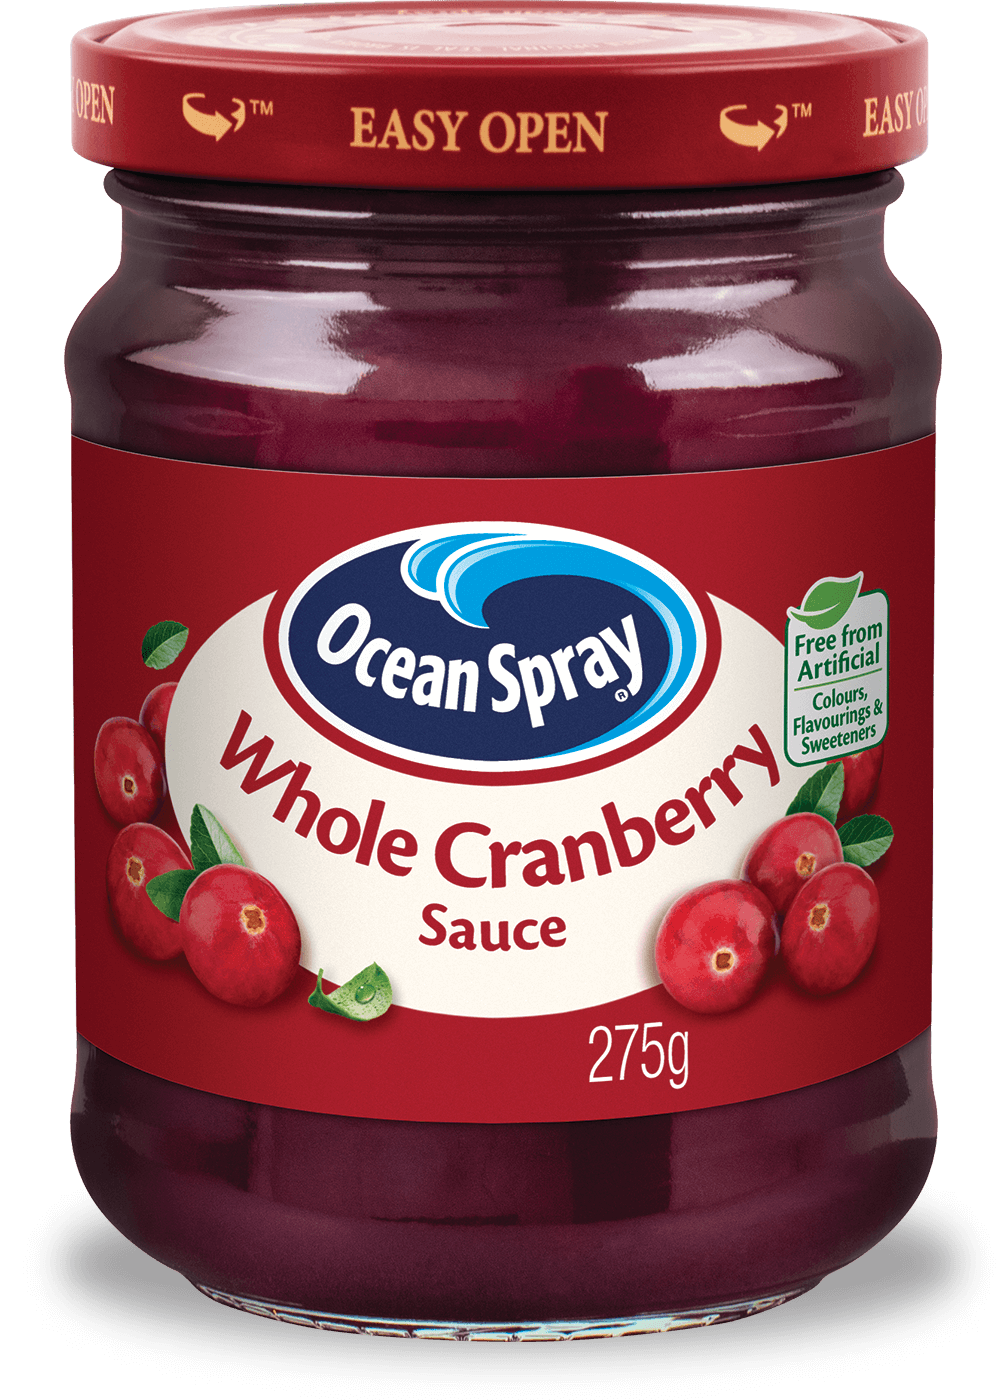 Whole Cranberry Sauce